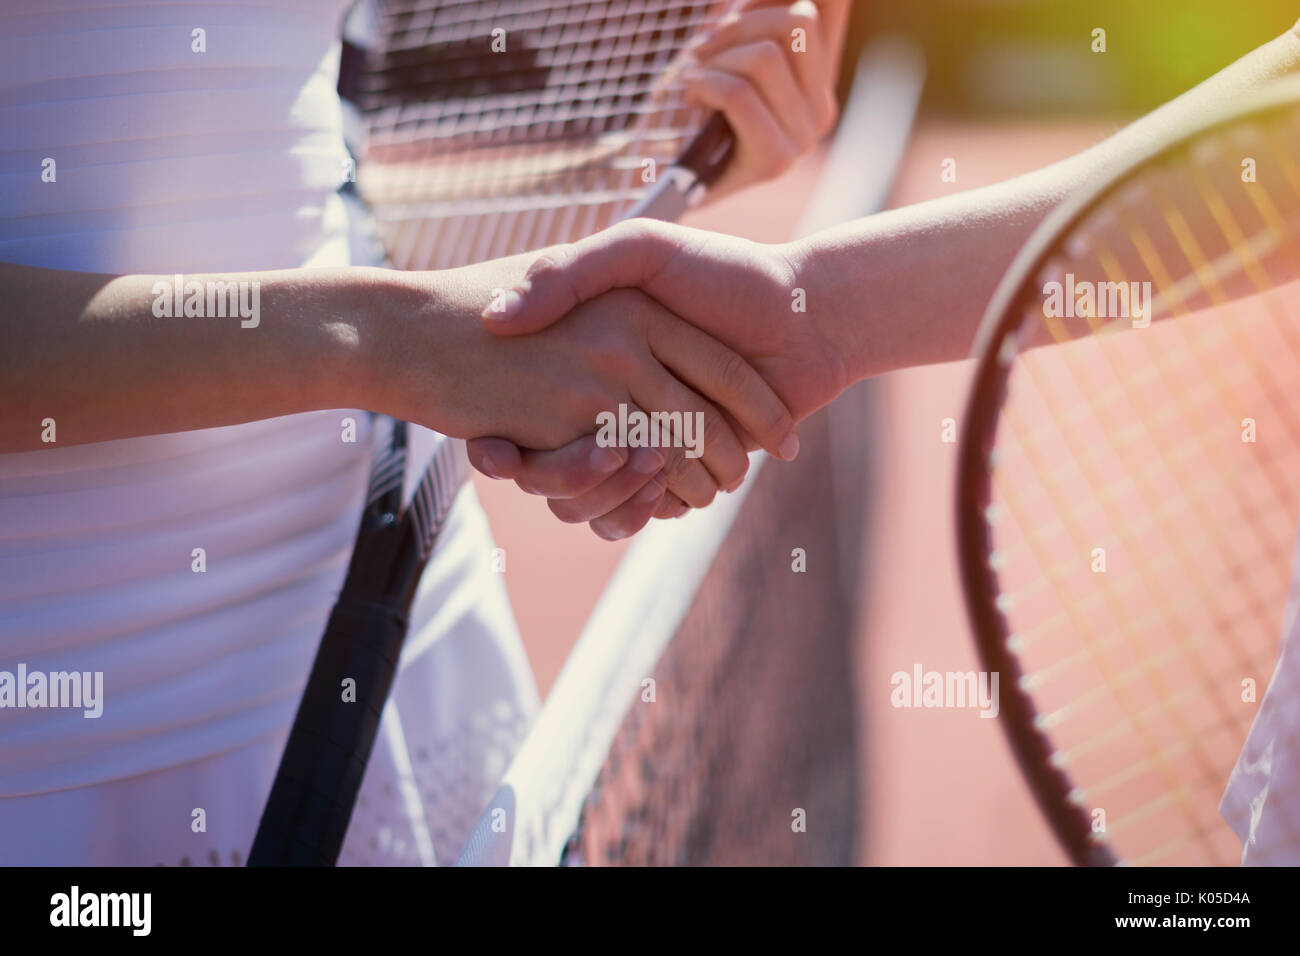 Close up les joueurs de tennis handshaking in esprit sportif au filet Banque D'Images